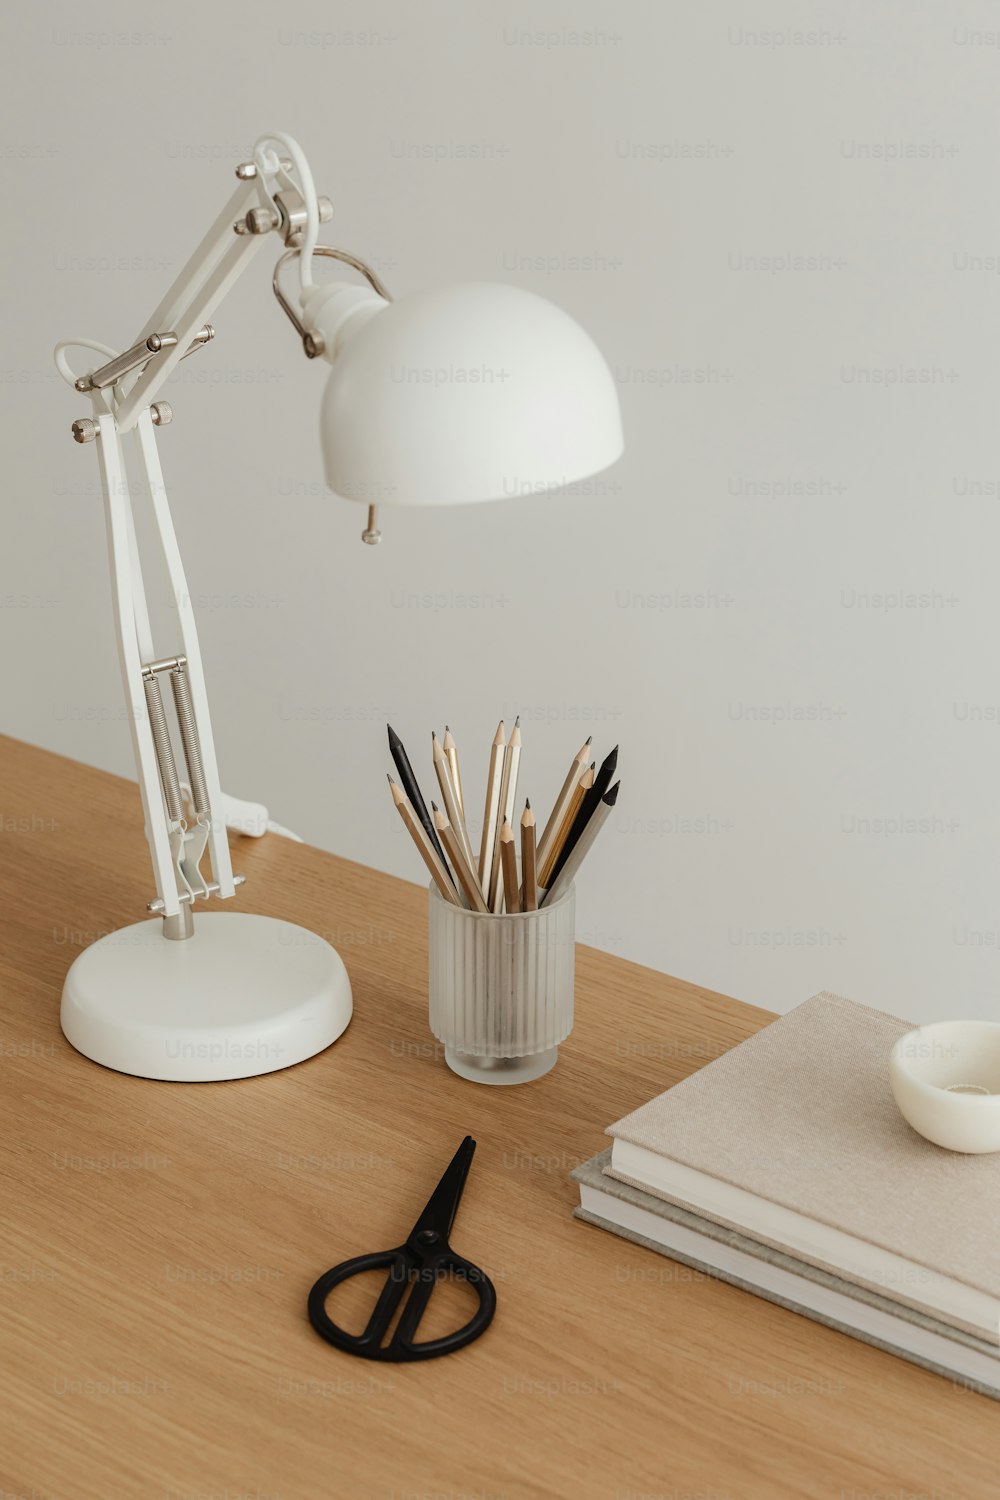 un bureau avec une lampe, des crayons et une tasse dessus